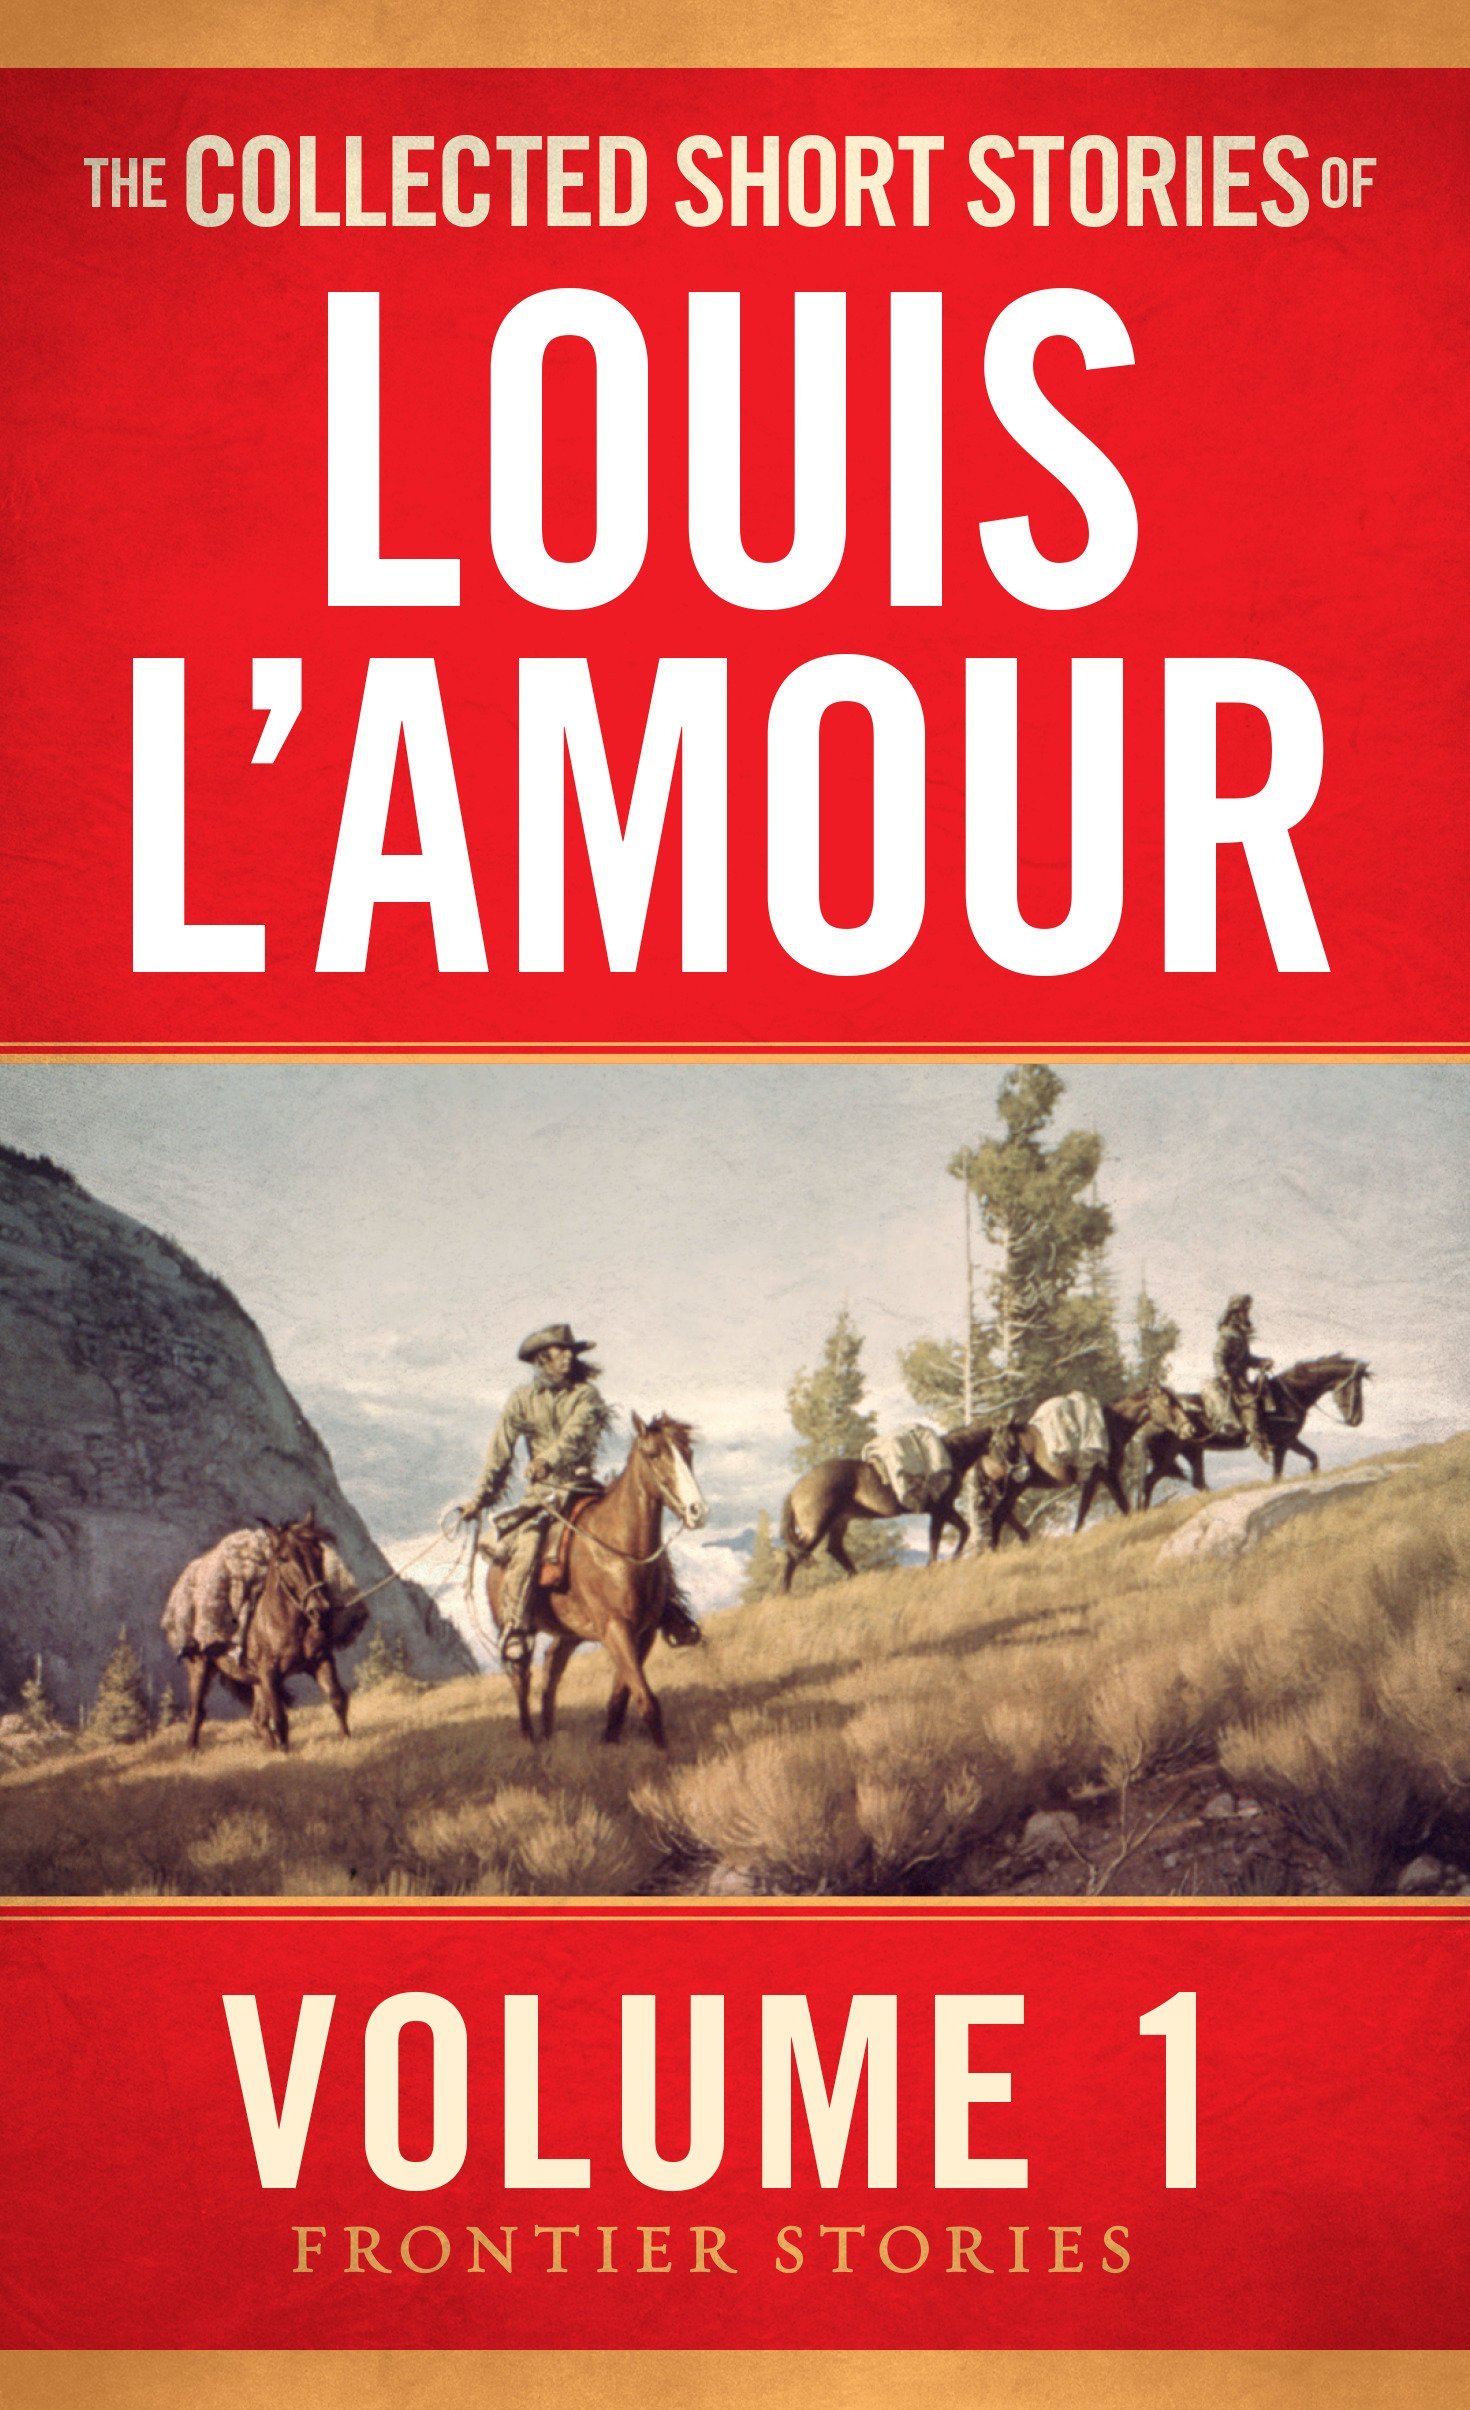 Louis L'Amour Westerns